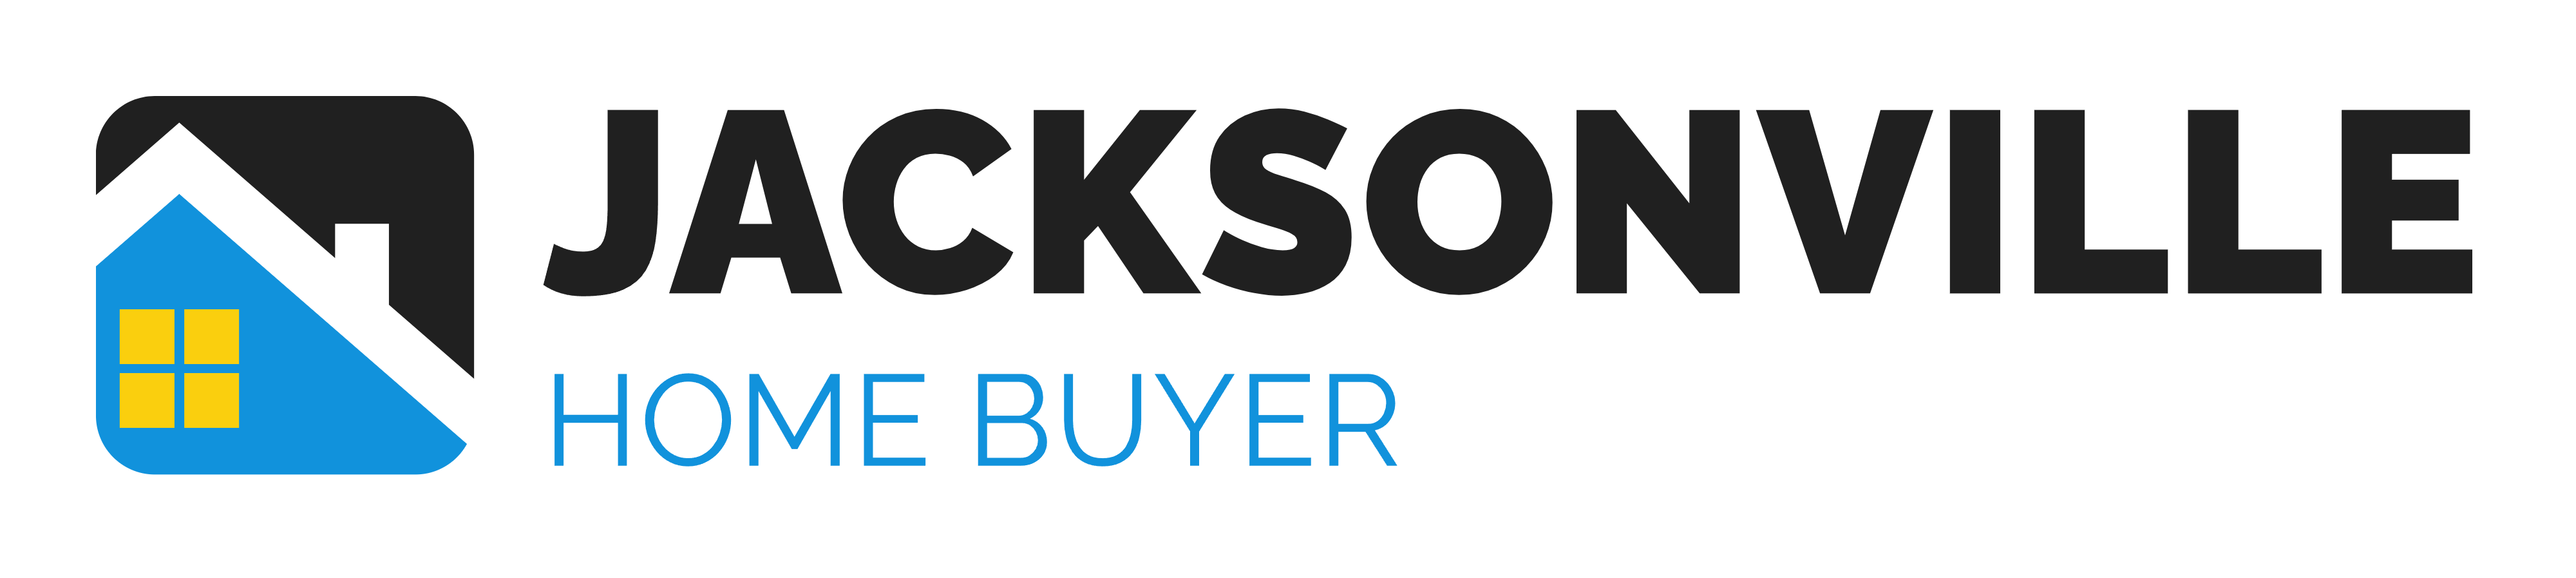 Jacksonville Home Buyer logo